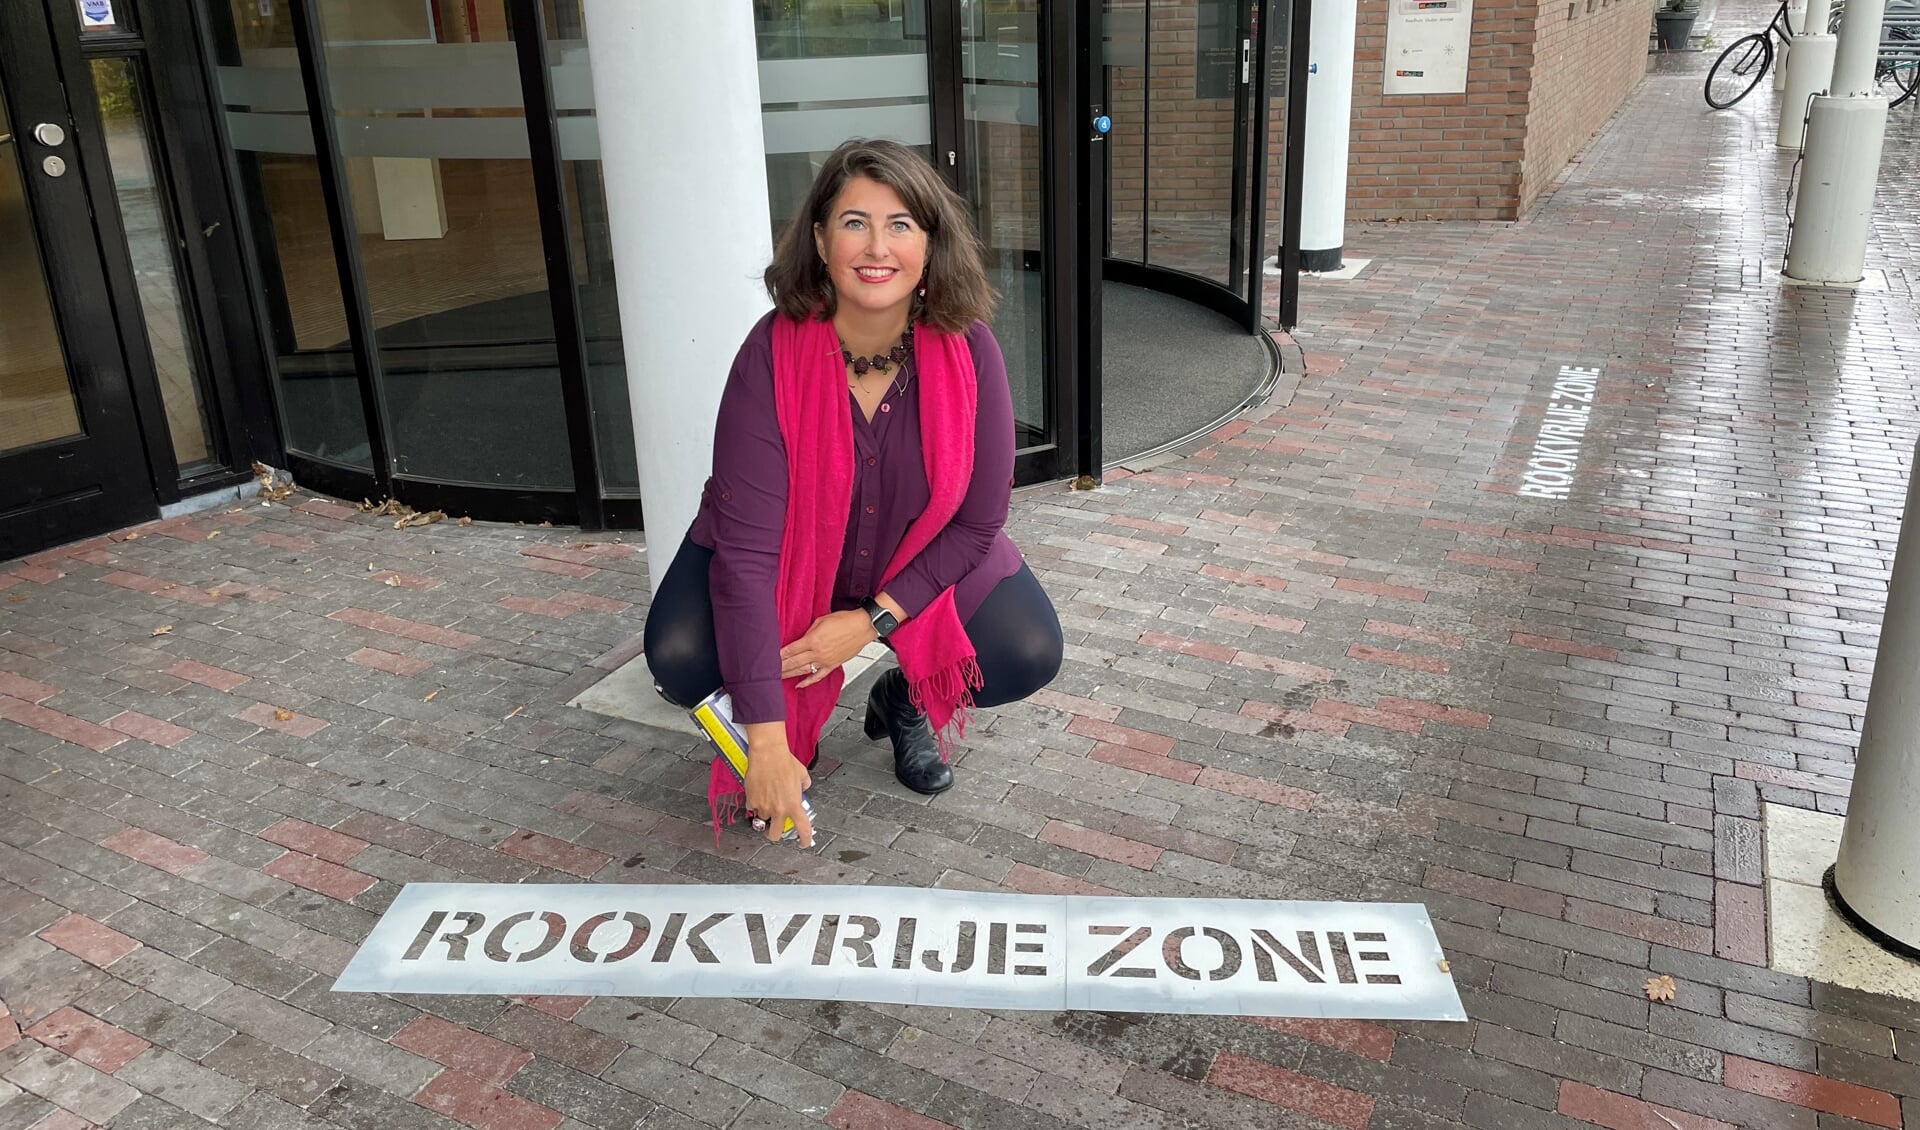 Wethouder Barbara de Reijke markeert rookvrij zone bij Gemeentehuis in Ouderkerk.